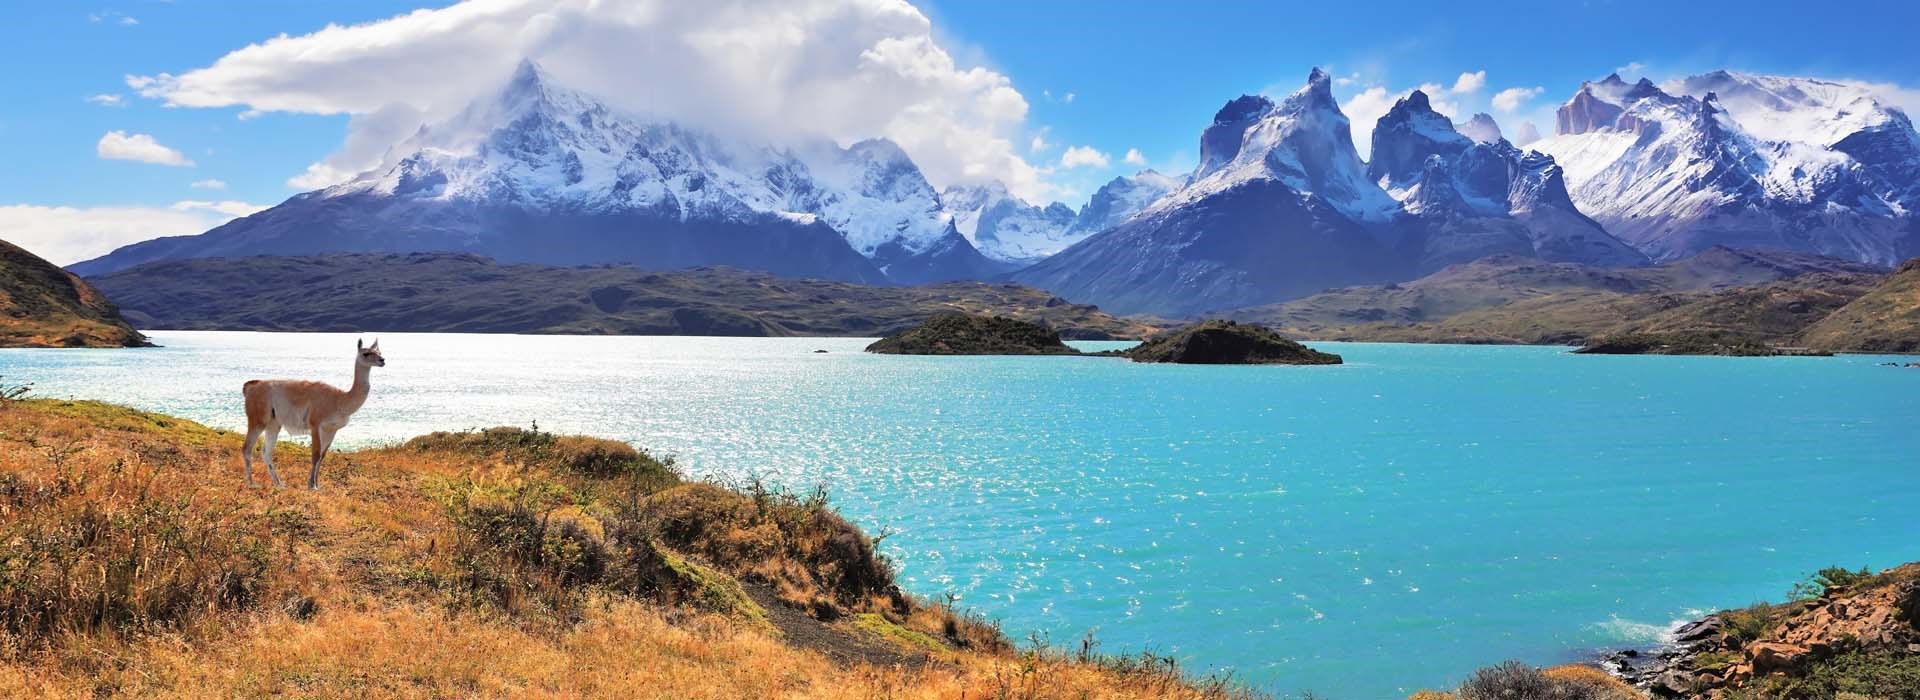 Visiter Le Parc National Torres del Paine - Argentine